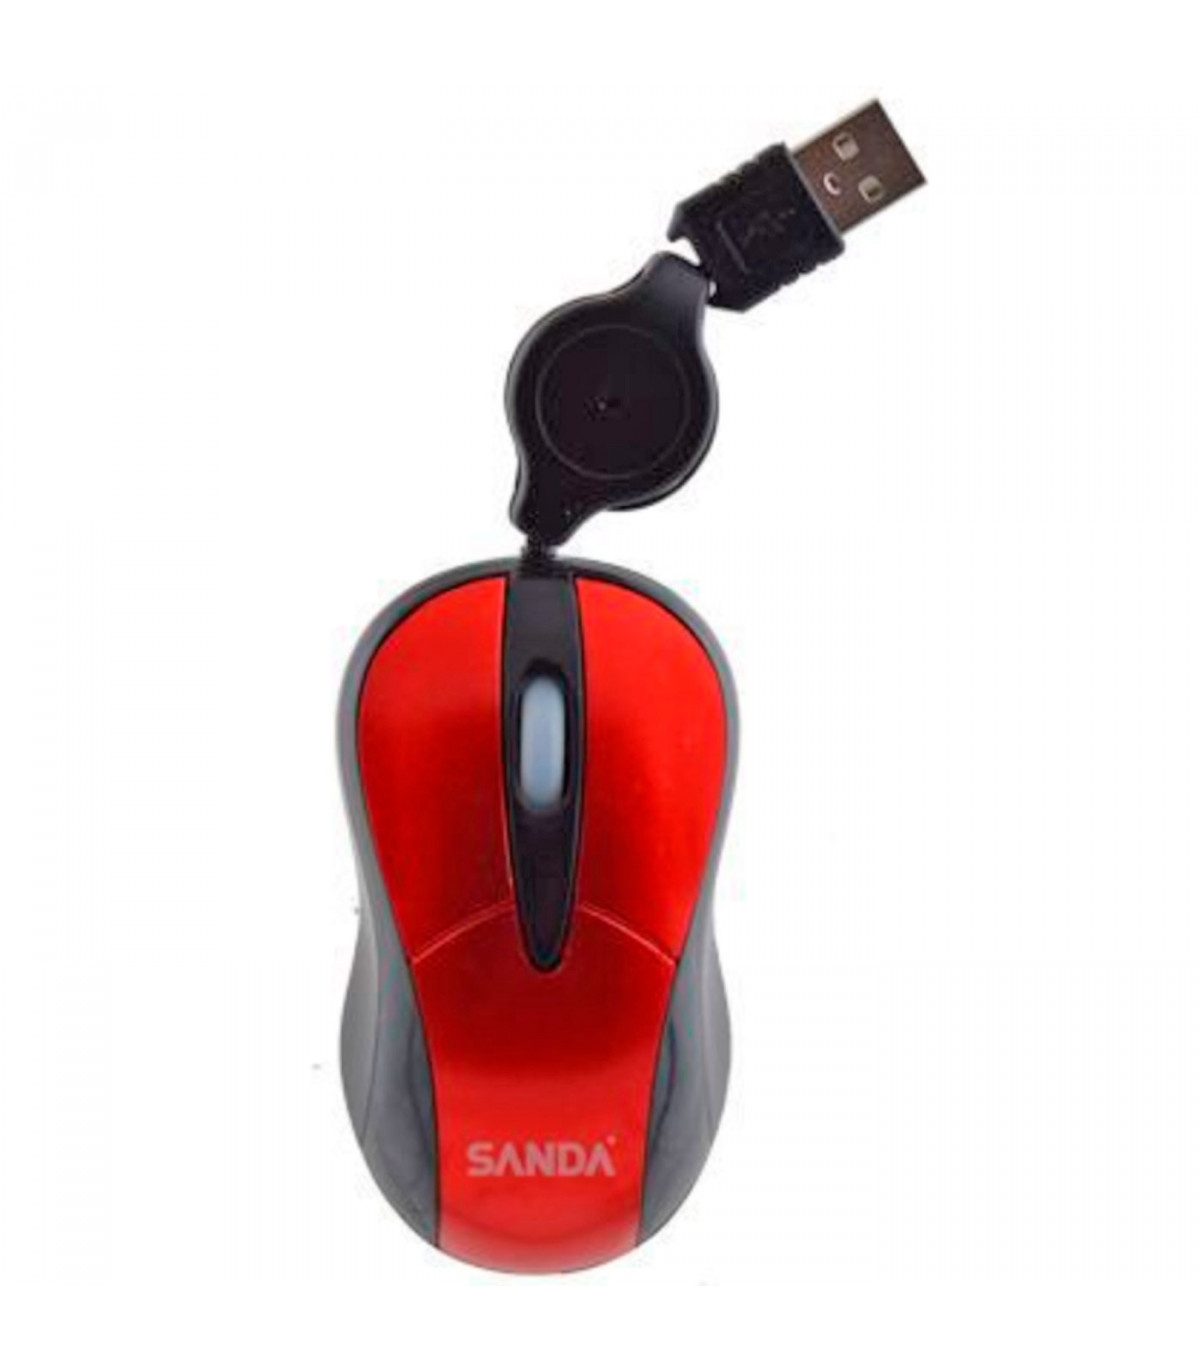 Ratón con 3 botones y cable USB